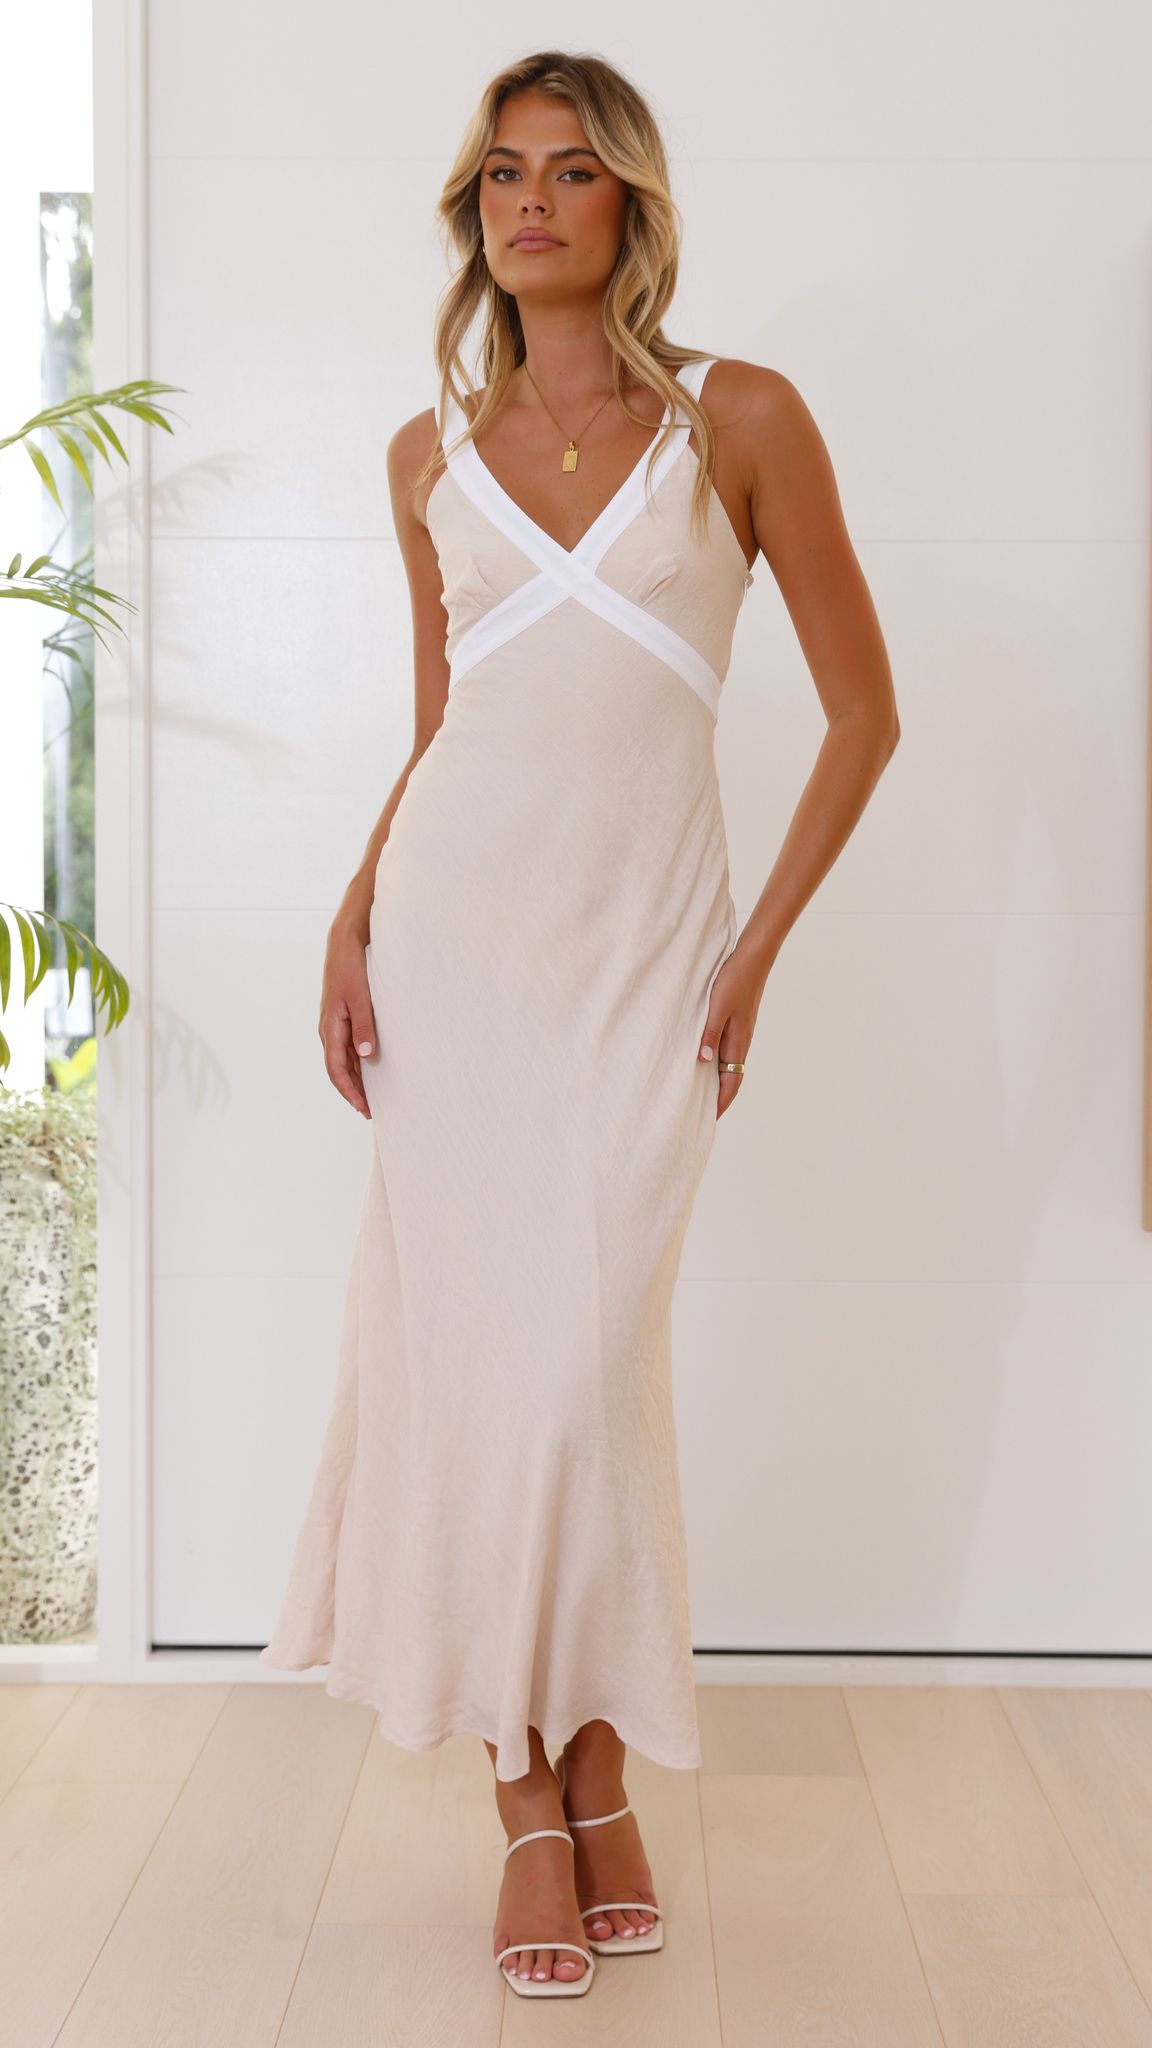 Iylah Midi Dress - Beige / White